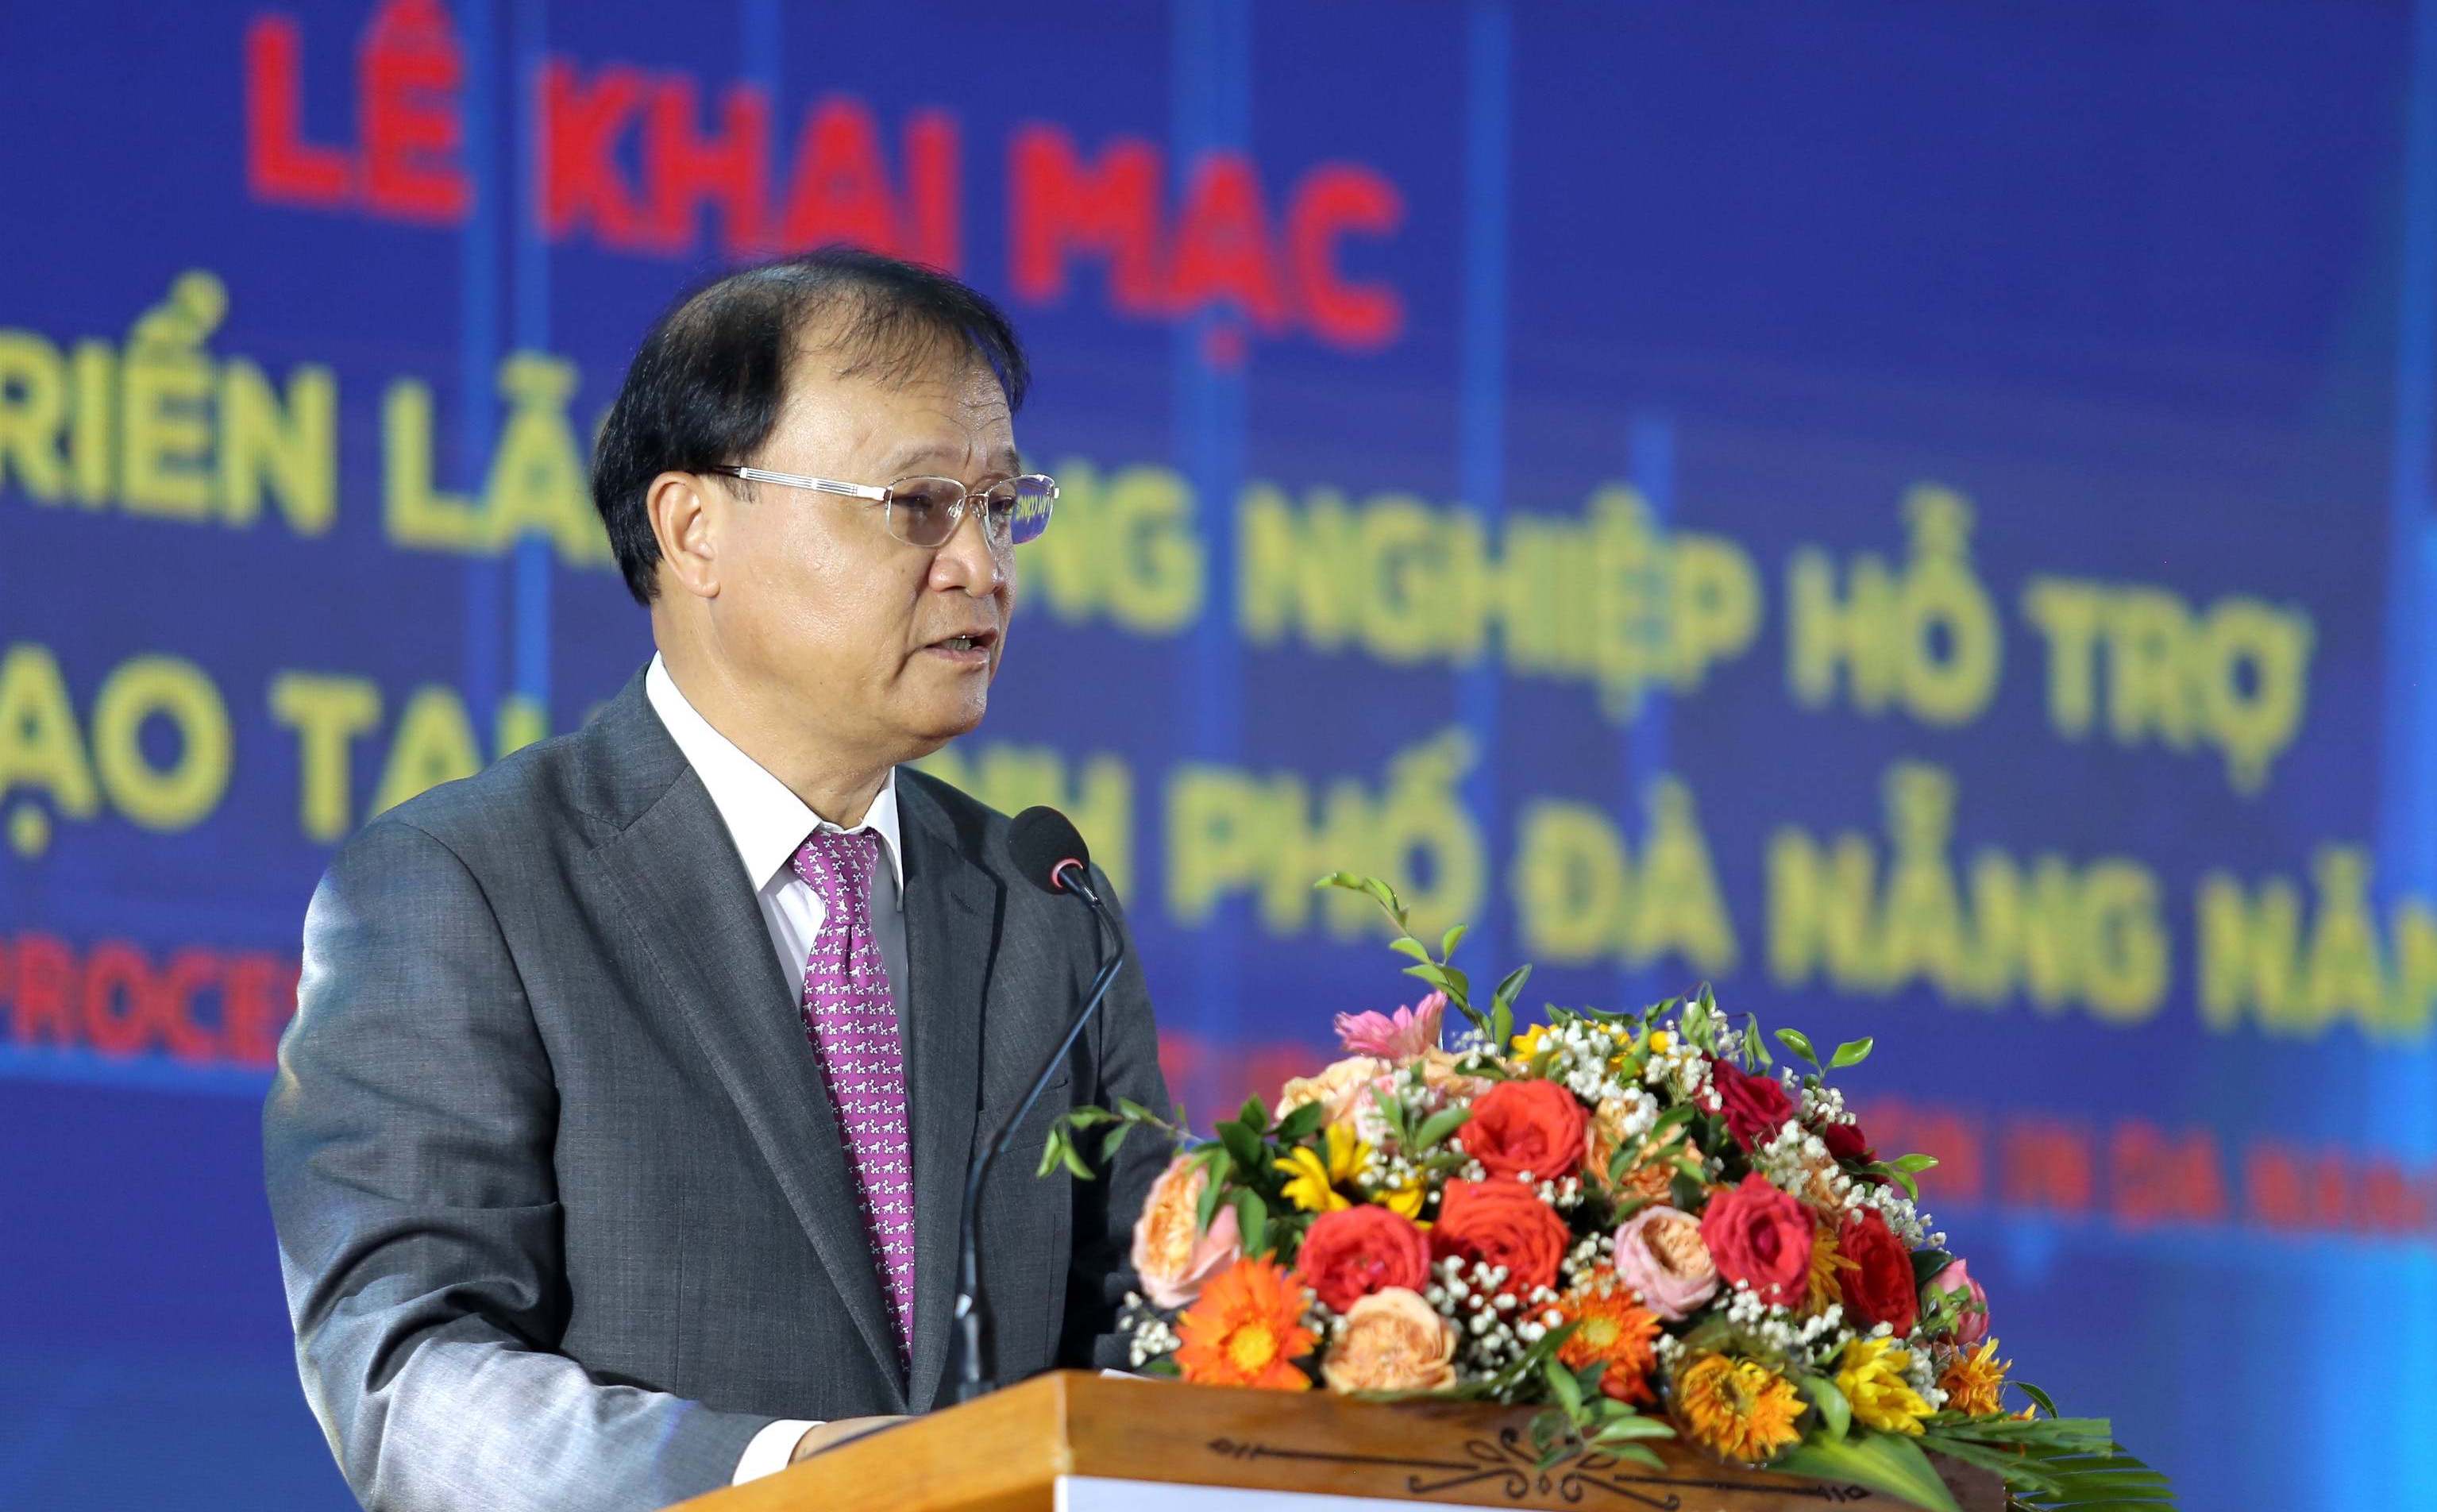 Thứ trưởng Bộ Công Thương Đỗ Thắng Hải phát biểu lại Lễ khai mạc Hội chợ triển lãm công nghiệp hỗ trợ và chế biến chế tạo năm 2023 tại TP. Đà Nẵng